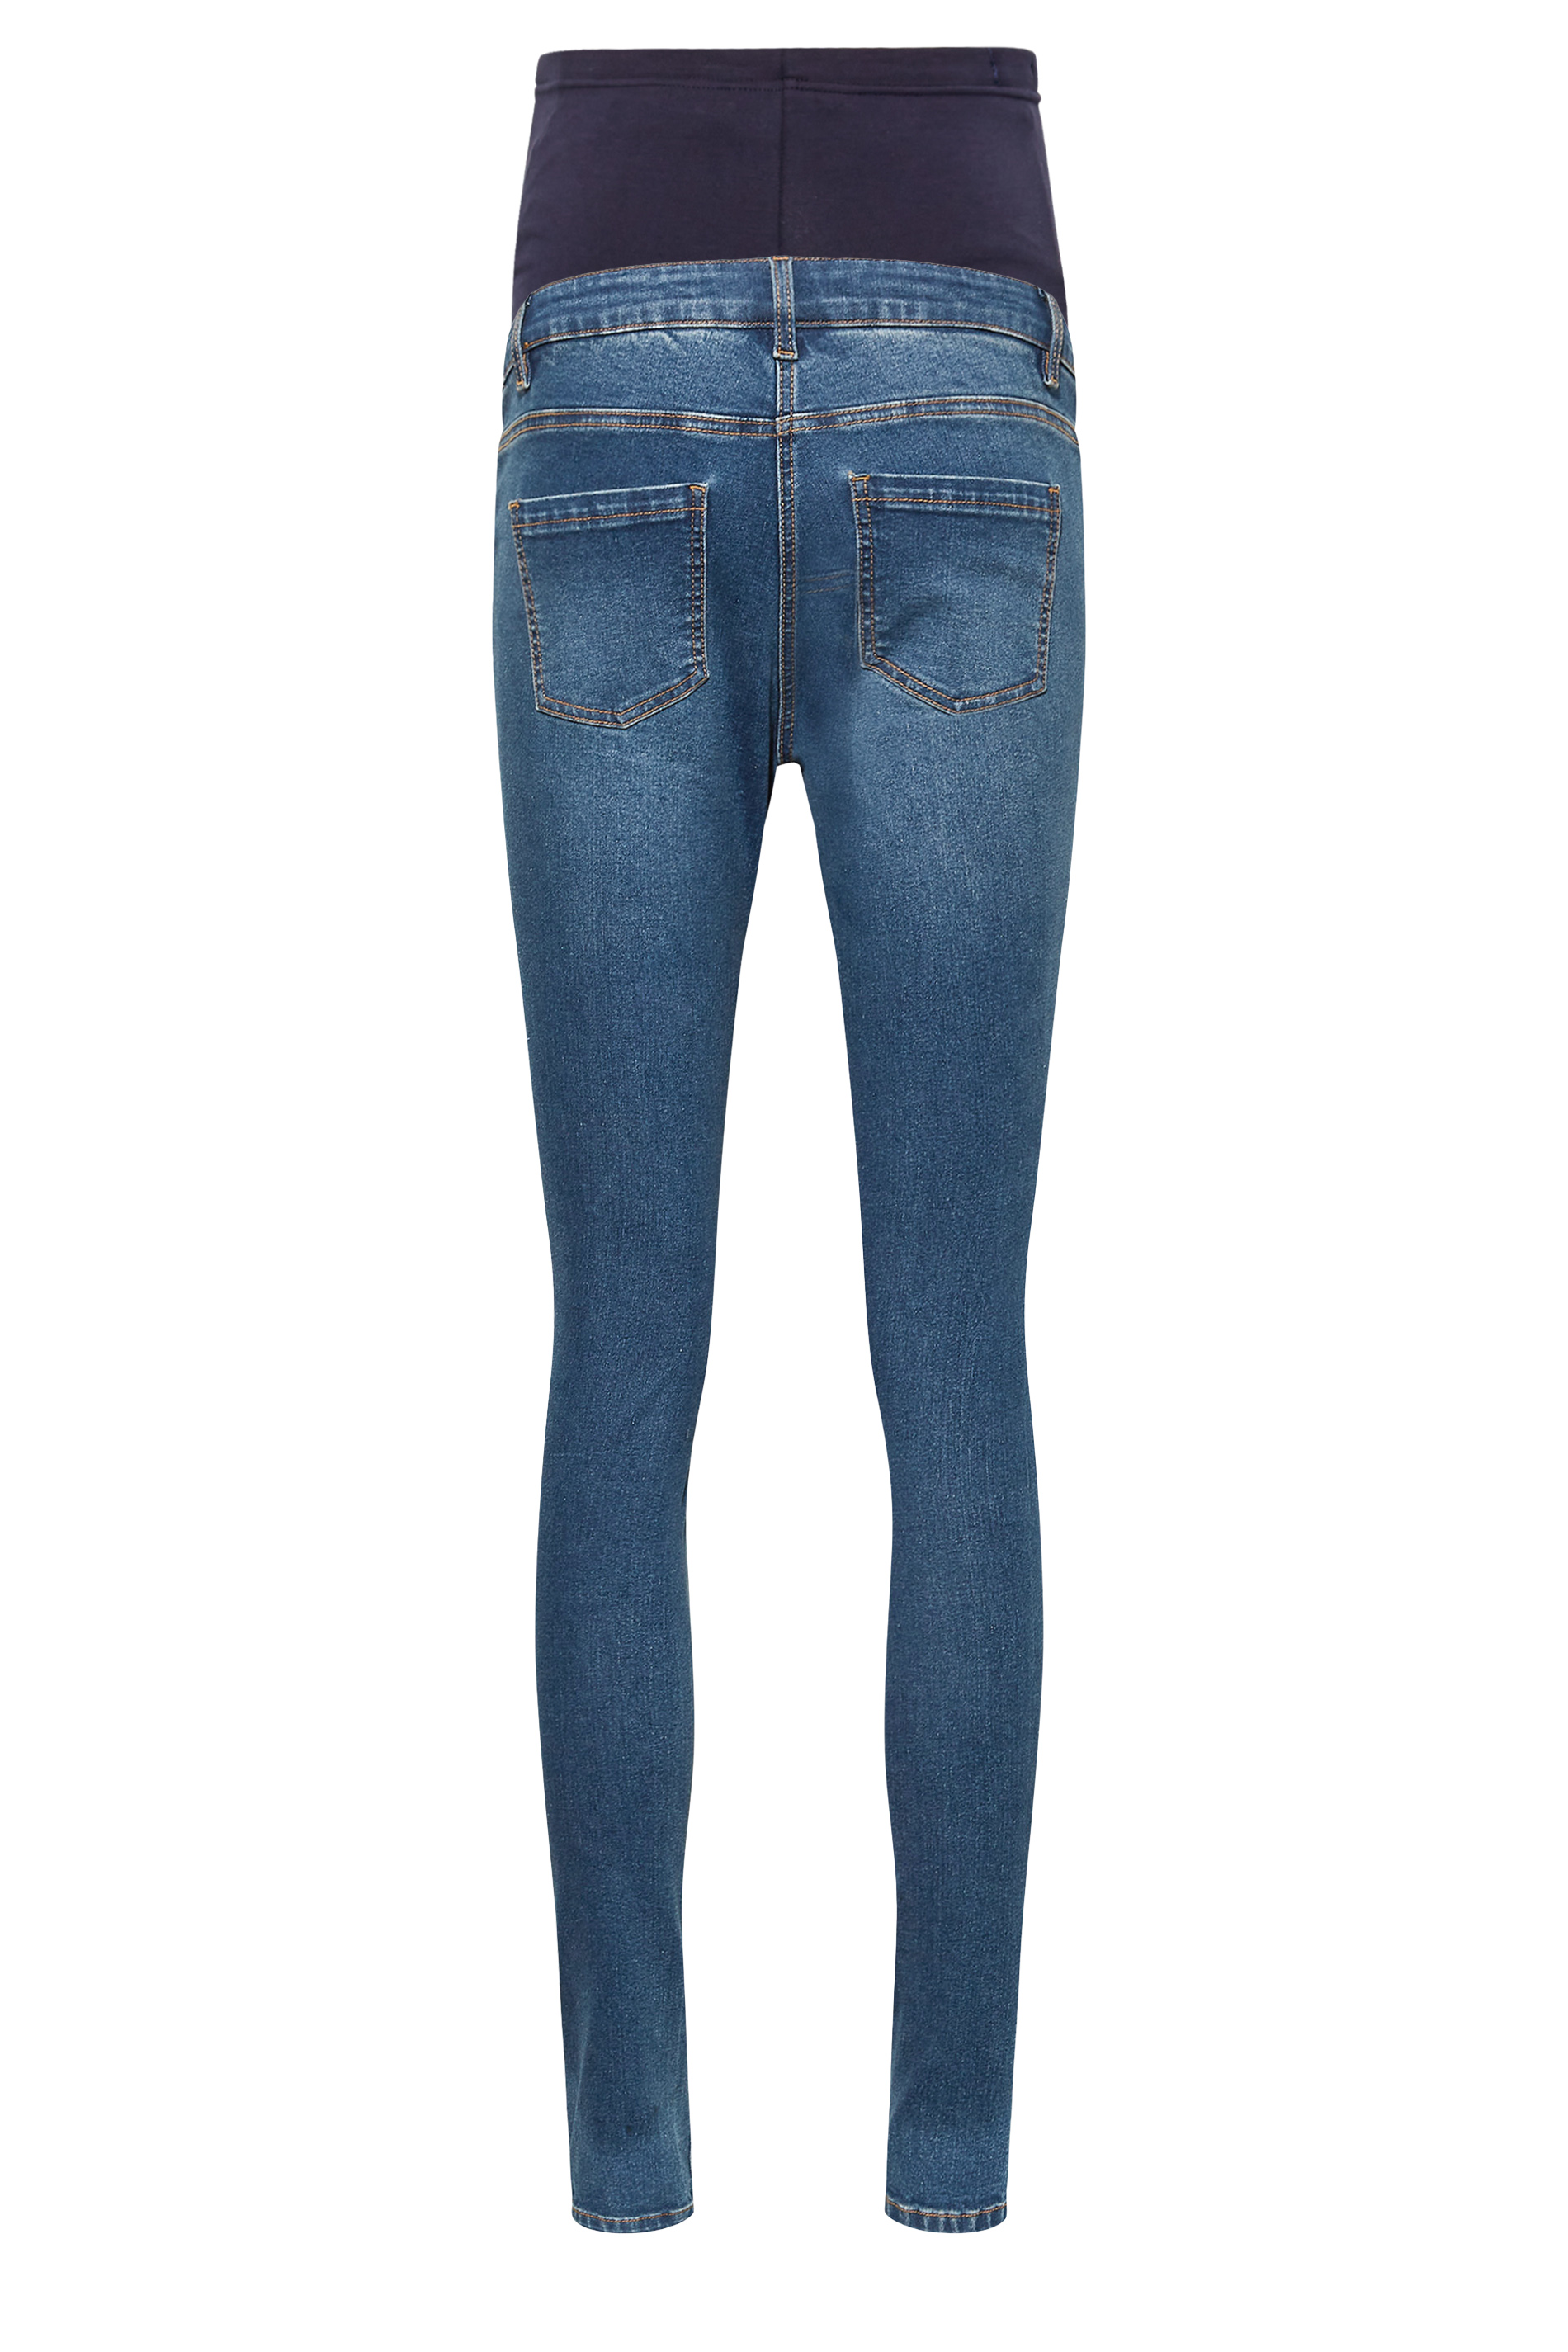 LTS Tall Women's Maternity Mid Blue Distressed AVA Skinny Jeans